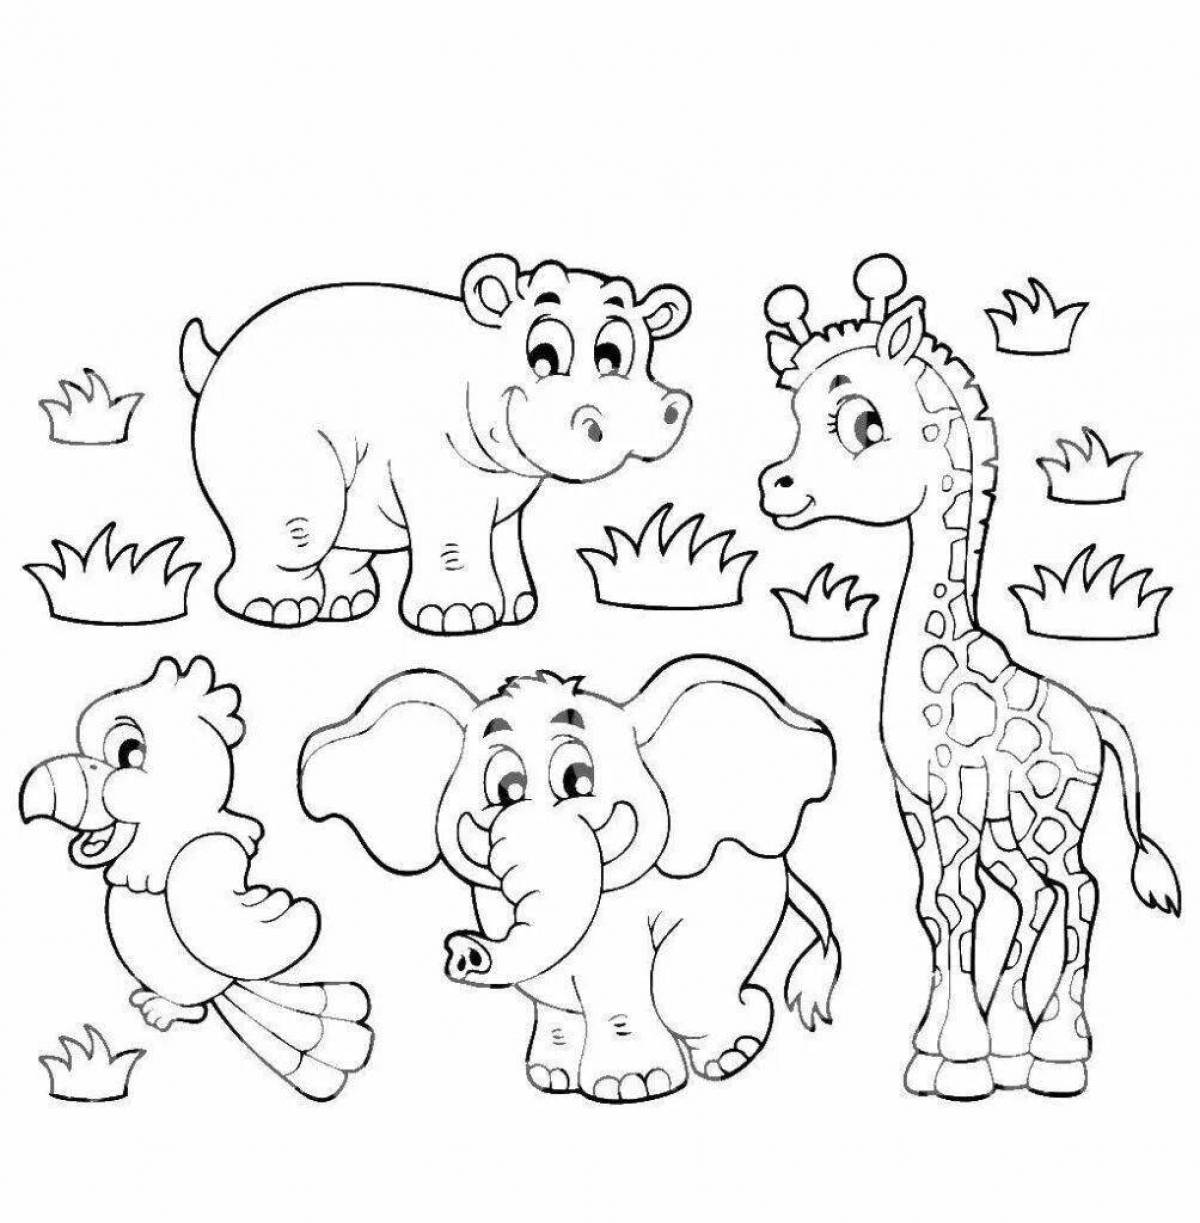 Увлекательная раскраска африканских животных для детей 5-7 лет